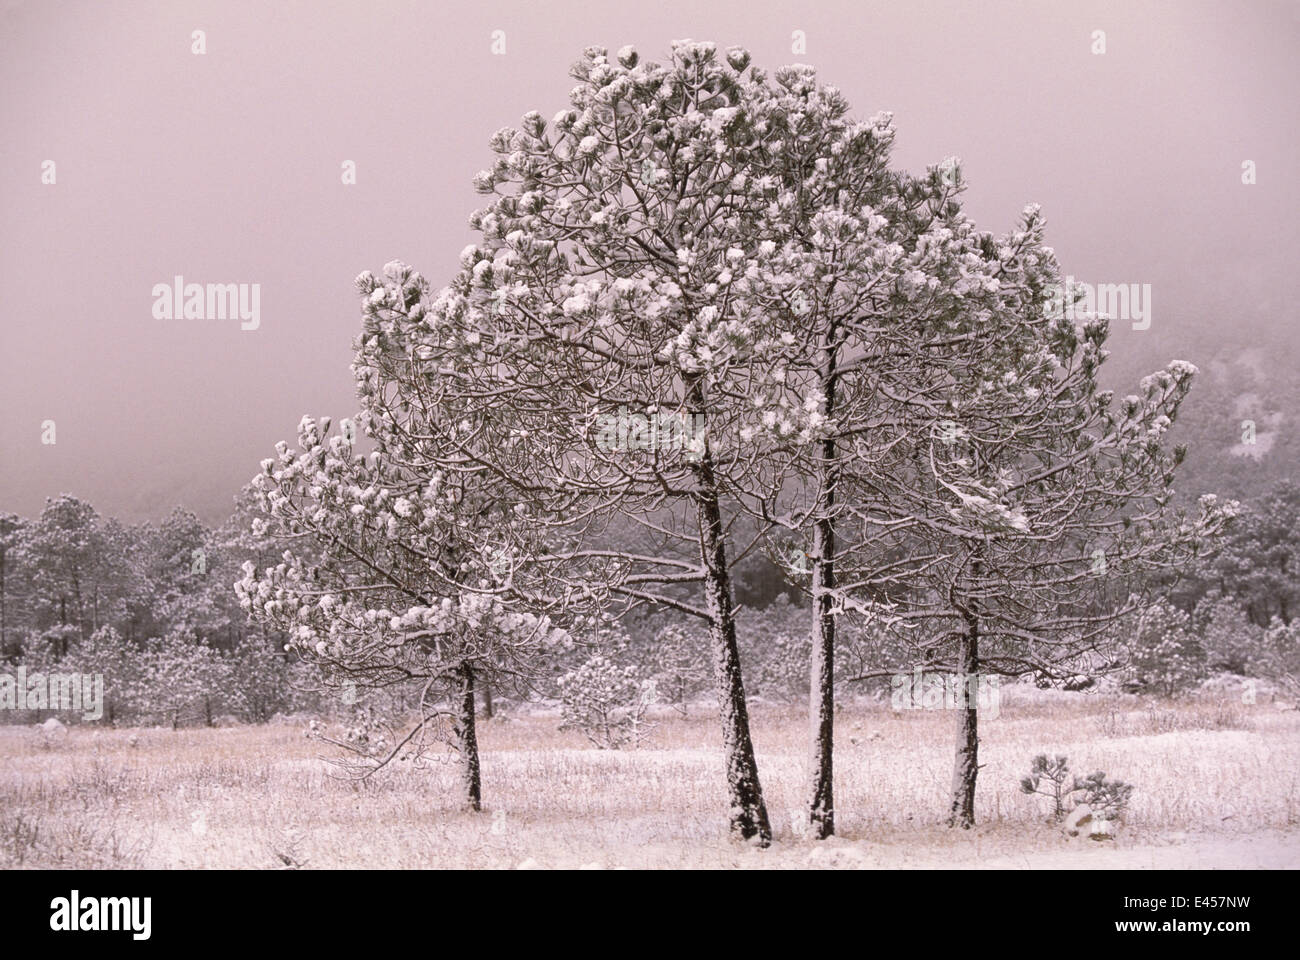 Yunnan pine trees in snow {Pinus yunnanensis} Lijiang, Yunnan province, China Stock Photo